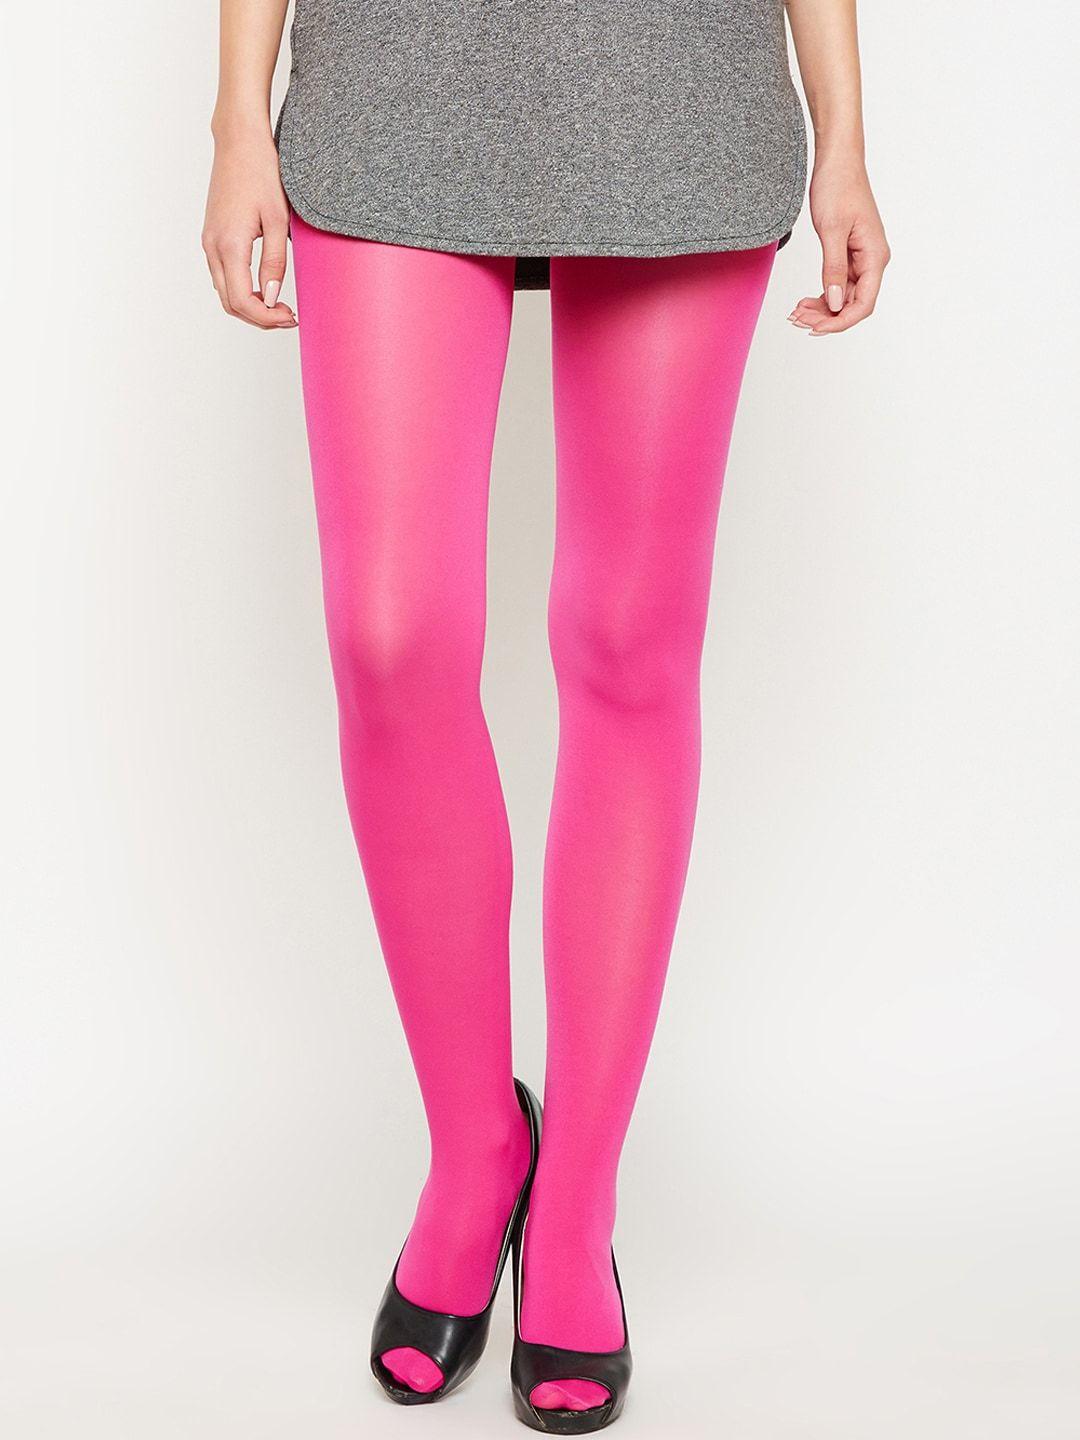 lebami women pink solid stockings